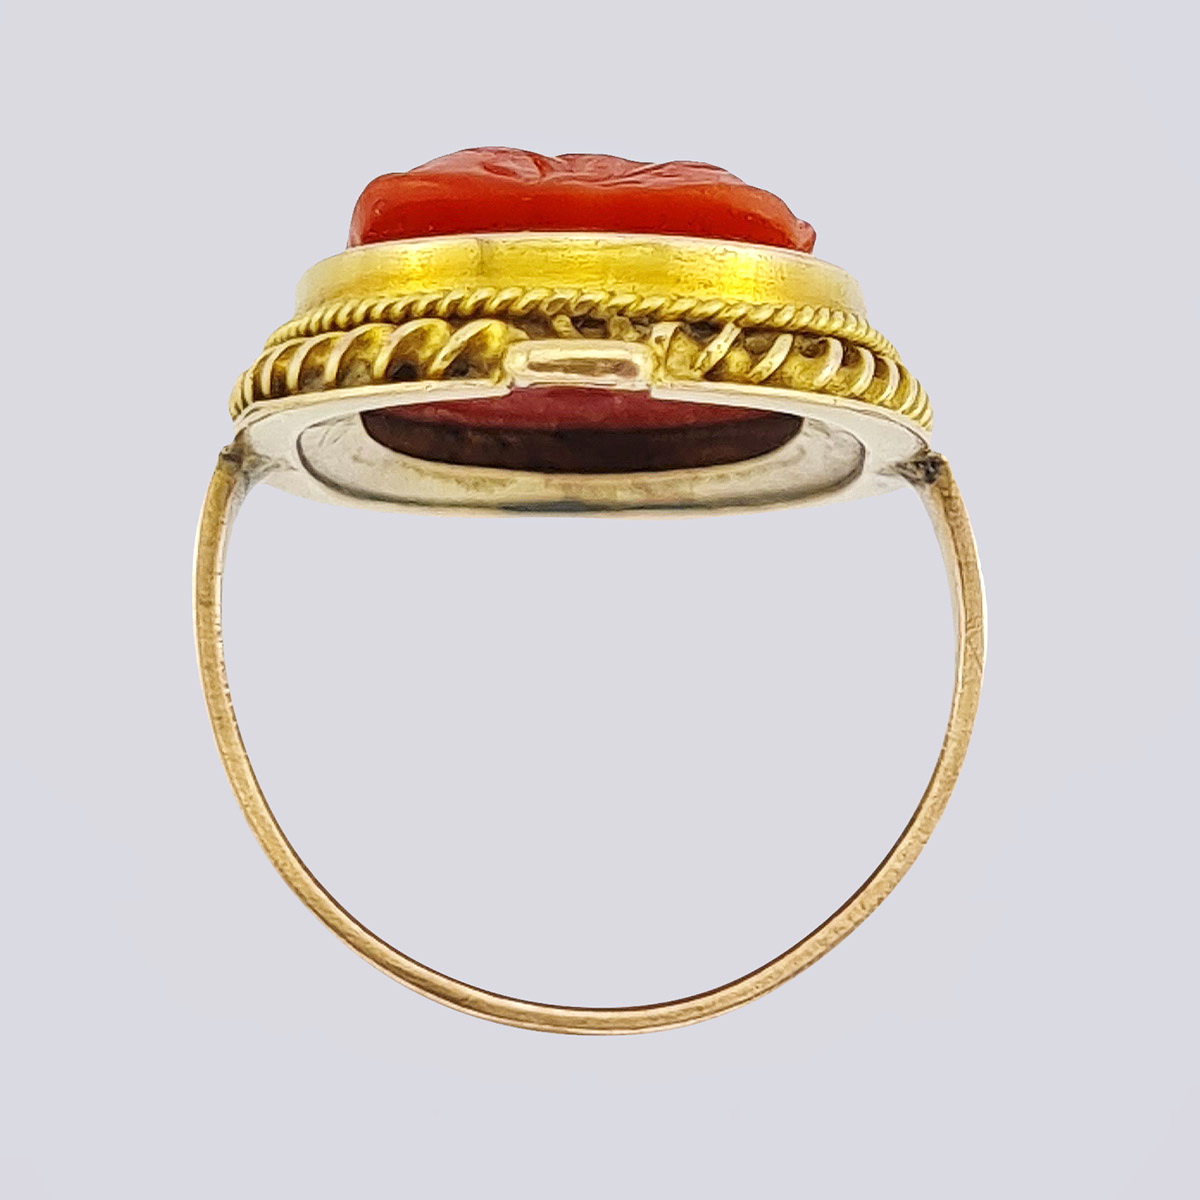 Антикварное золотое кольцо с резным кораллом середины 19 века